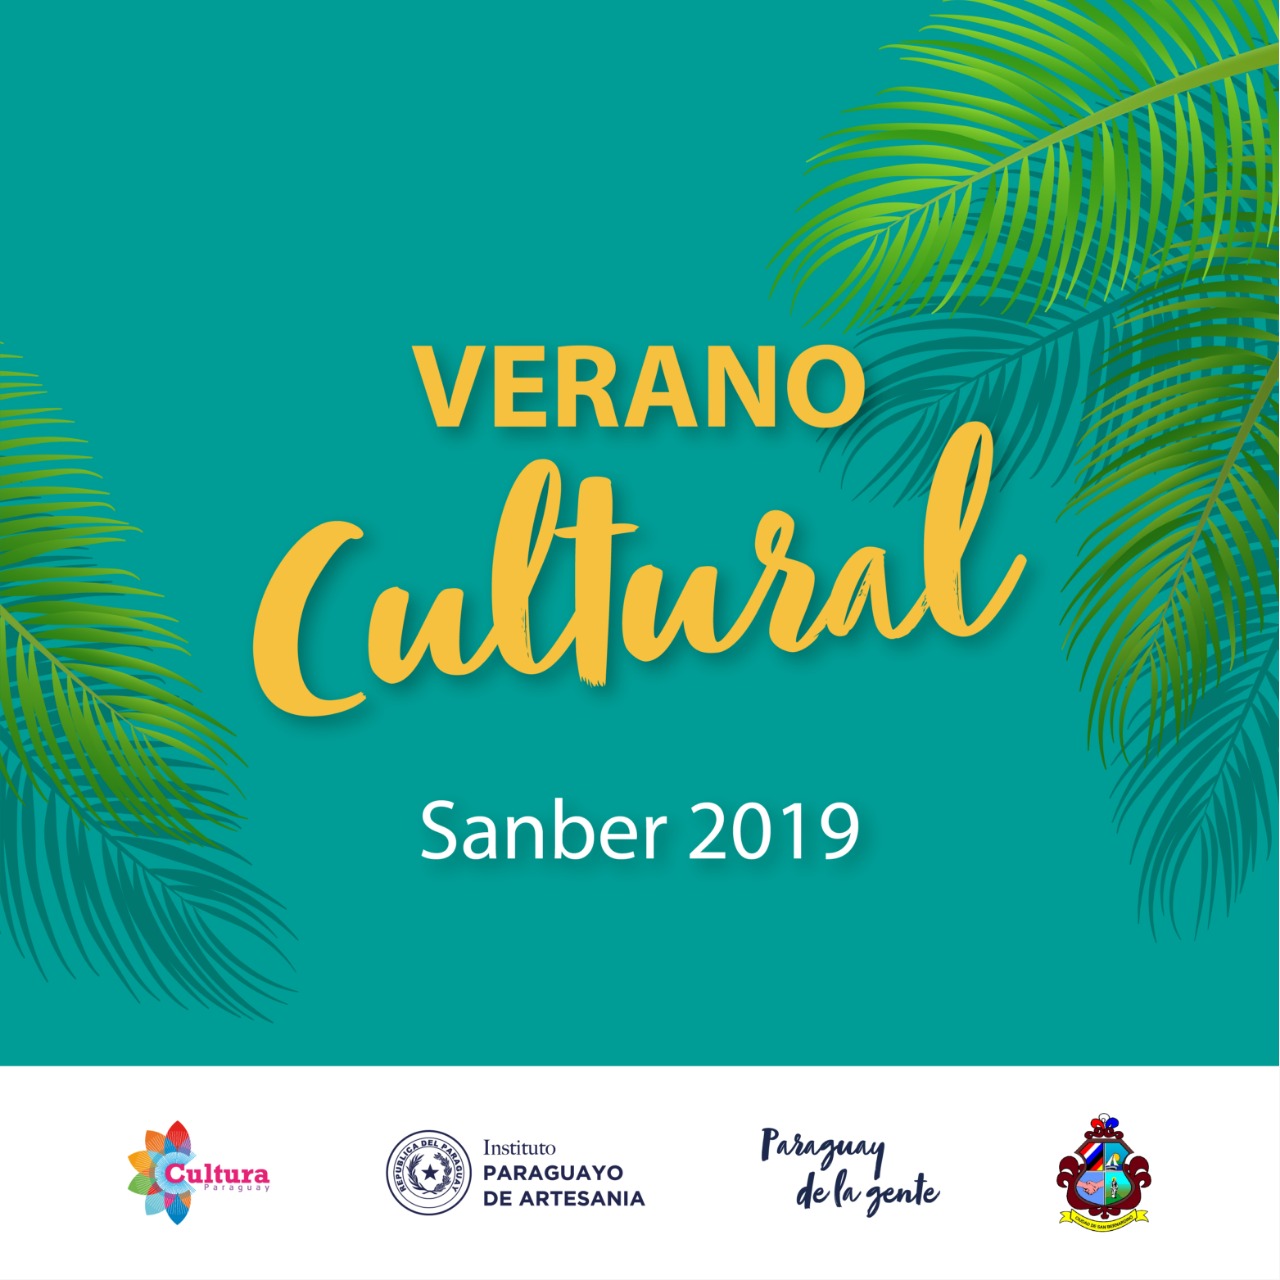 Continúan las actividades del “Verano Cultural Sanber 2019” imagen